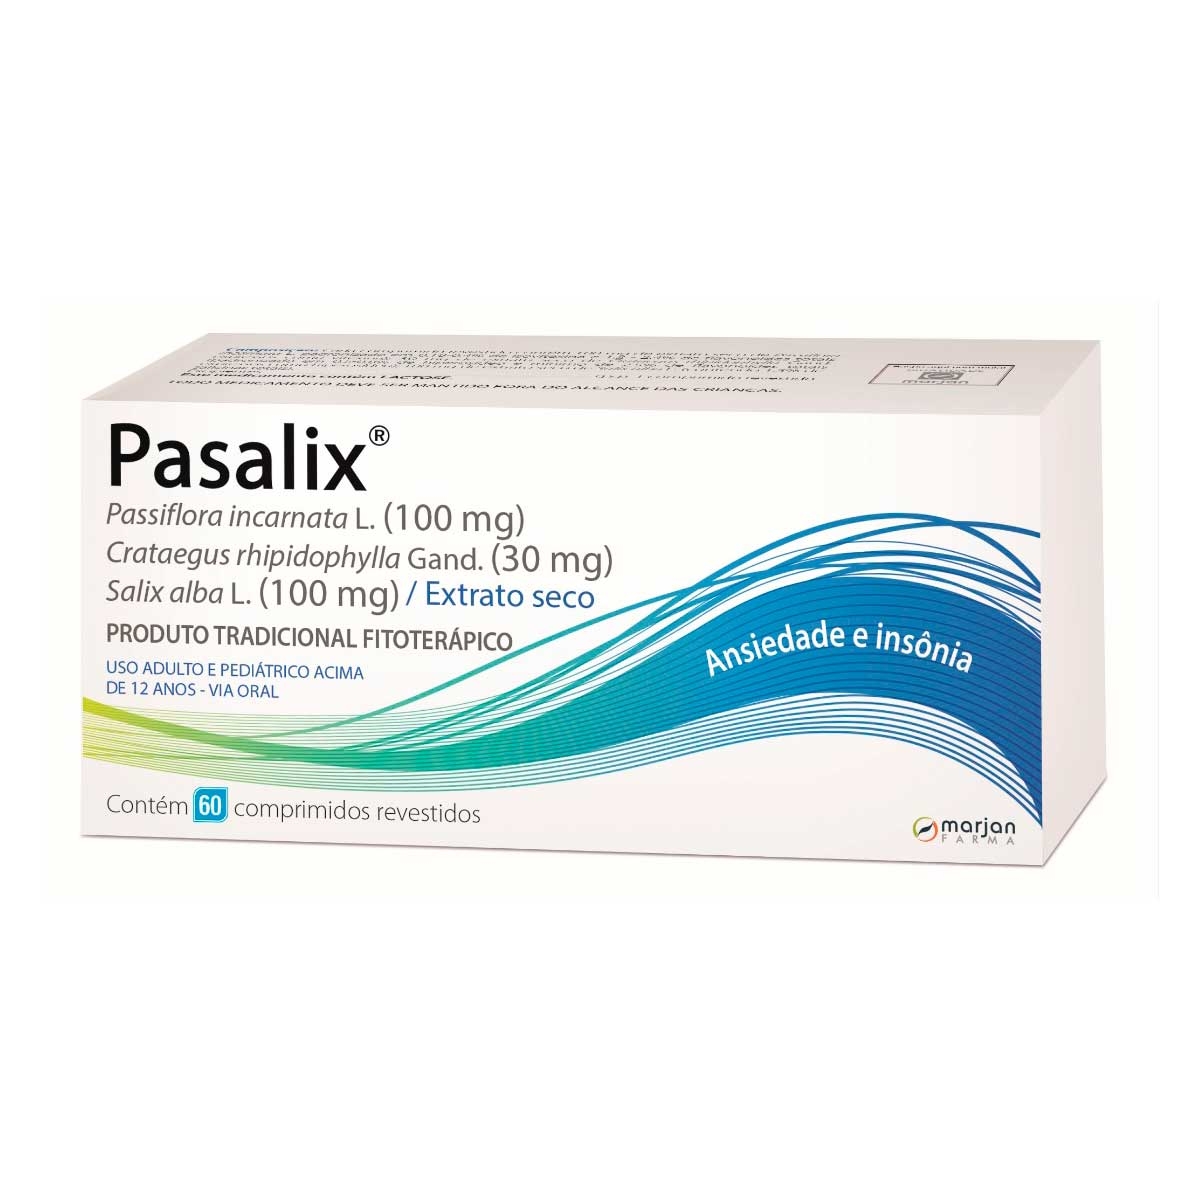 Pasalix 100mg com 60 comprimidos